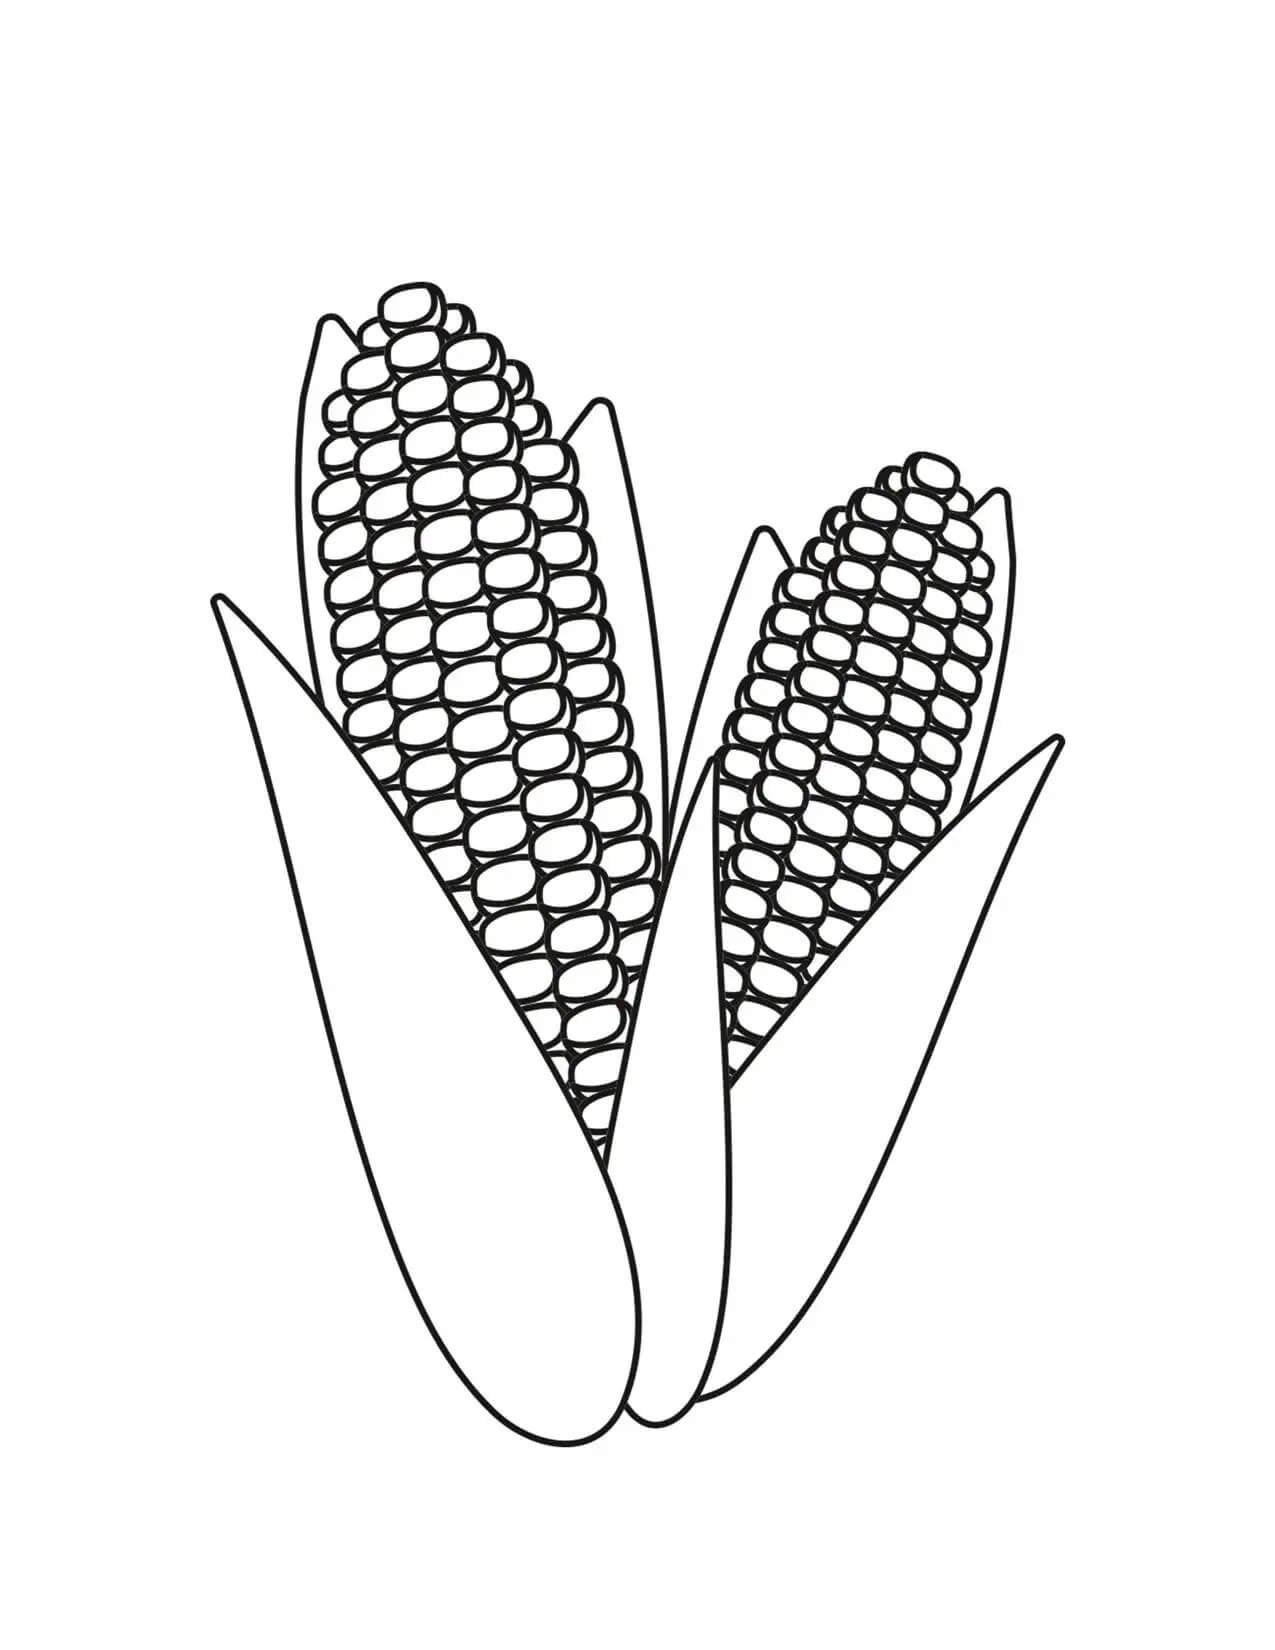 Шаблон сладкой кукурузы для вырезания